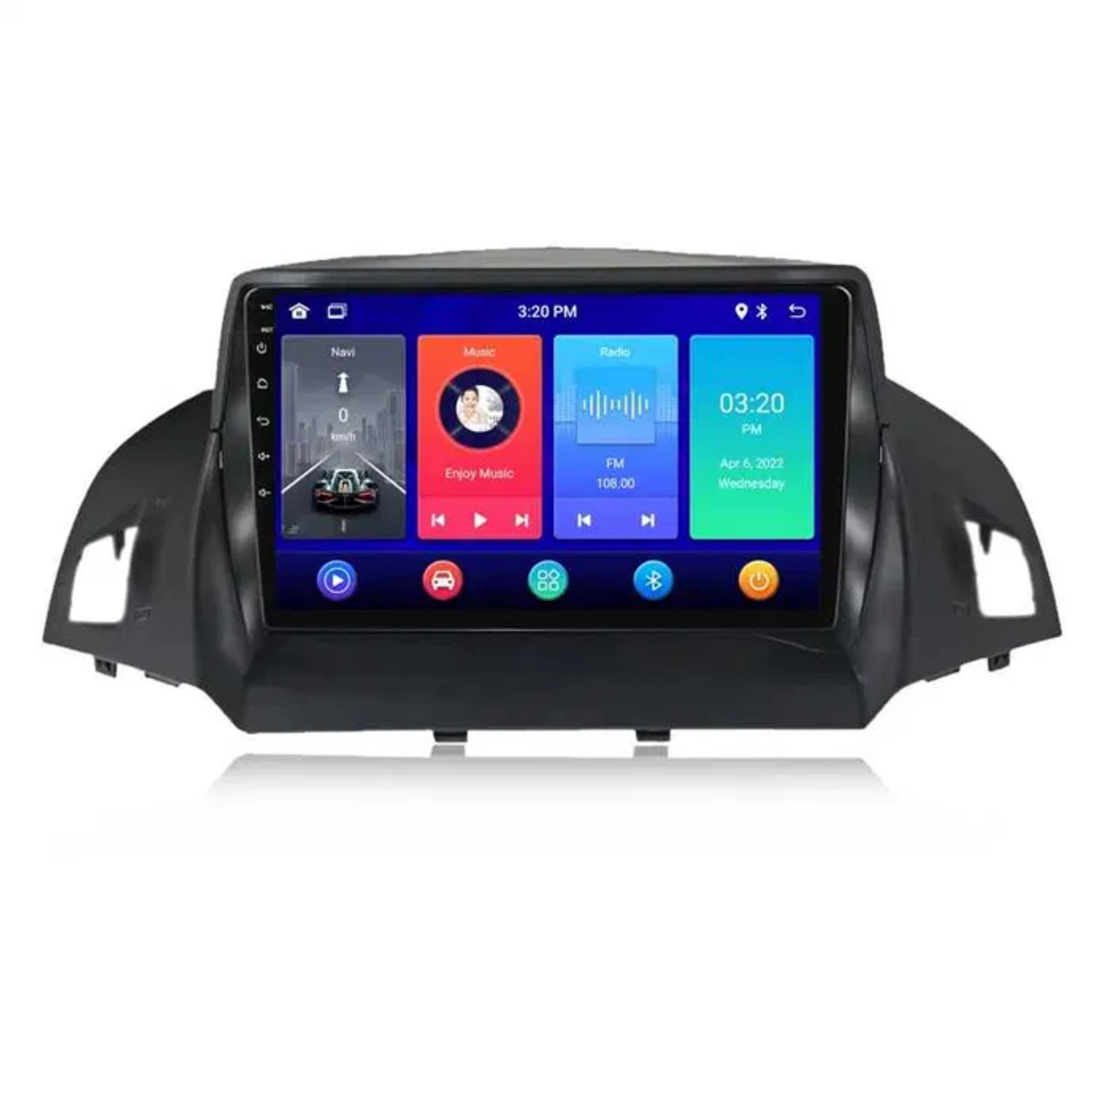 Ford Kuga 2013- 2016 Android Multimedia/Navigation